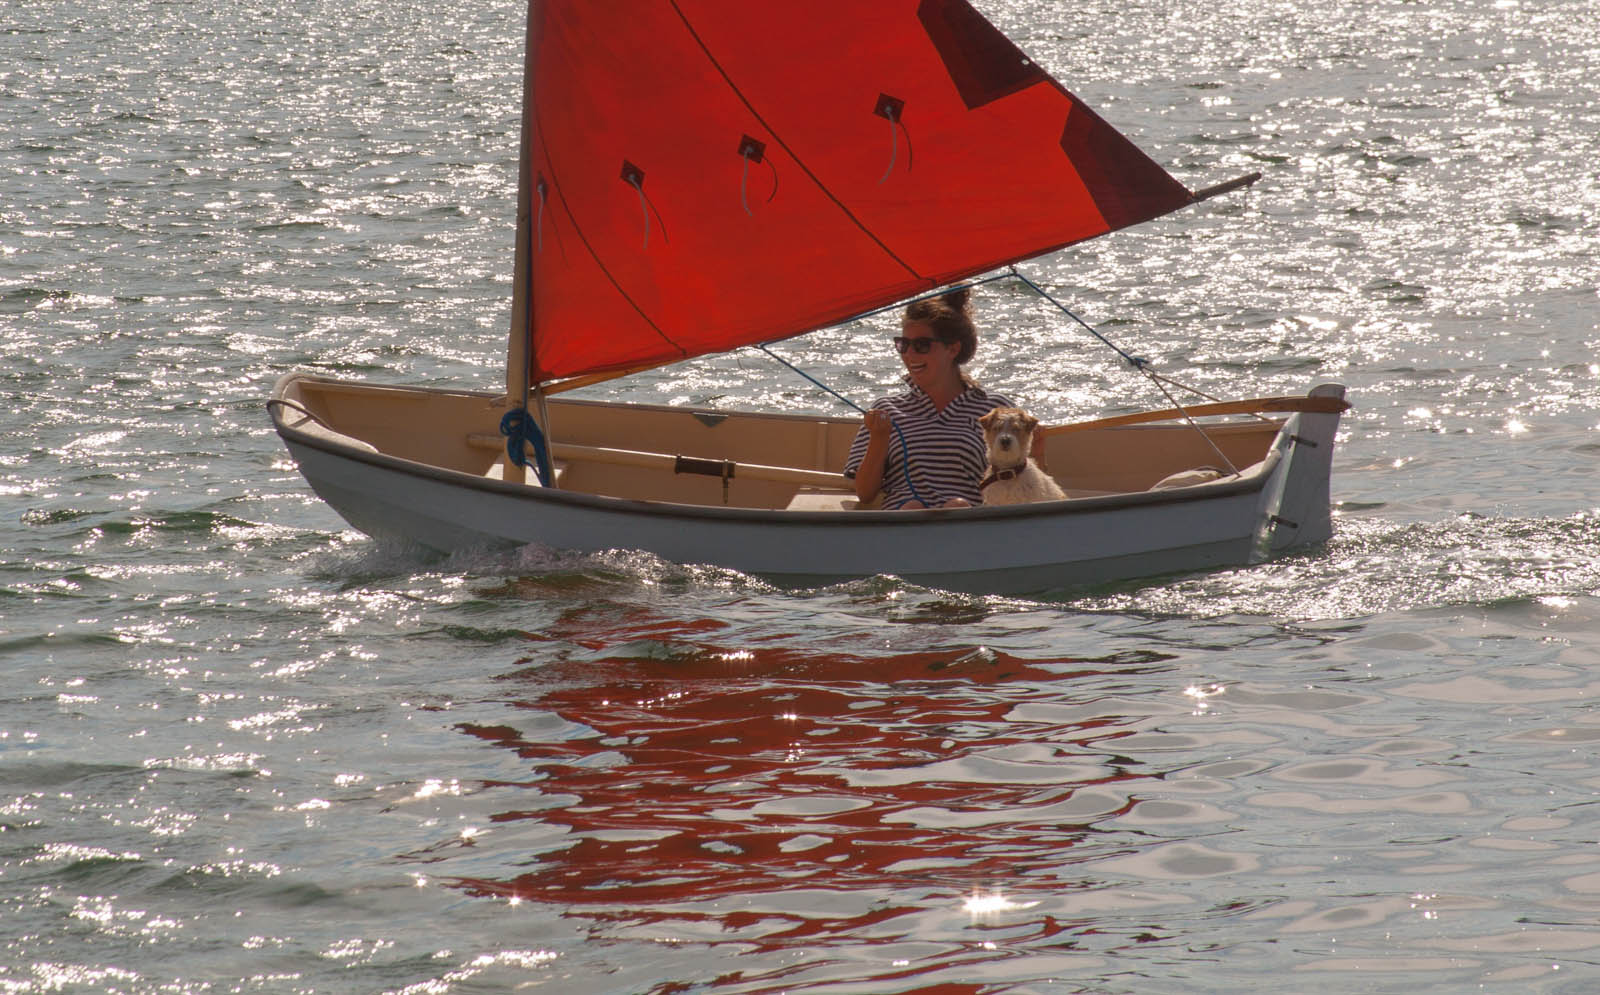 MJ Tommy dinghy sailing cuttyhunk crop (1 of 1).jpg